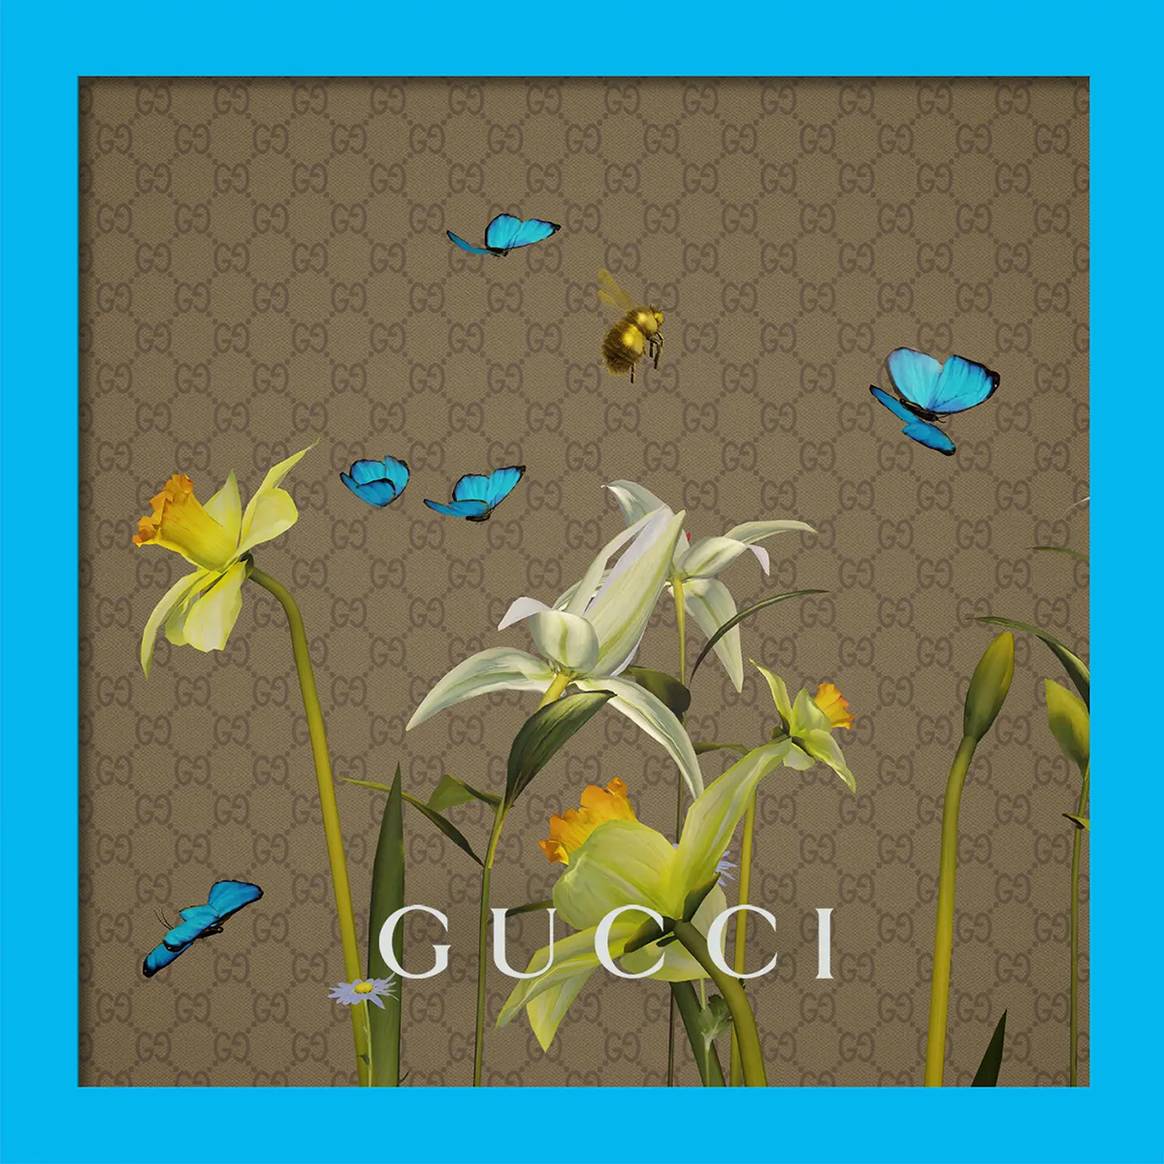 Photo Credits: Obra NFT “BL00M” de Ignasi Monreal, para “The Next 100 Years of Gucci”. Gucci Vault, página oficial.